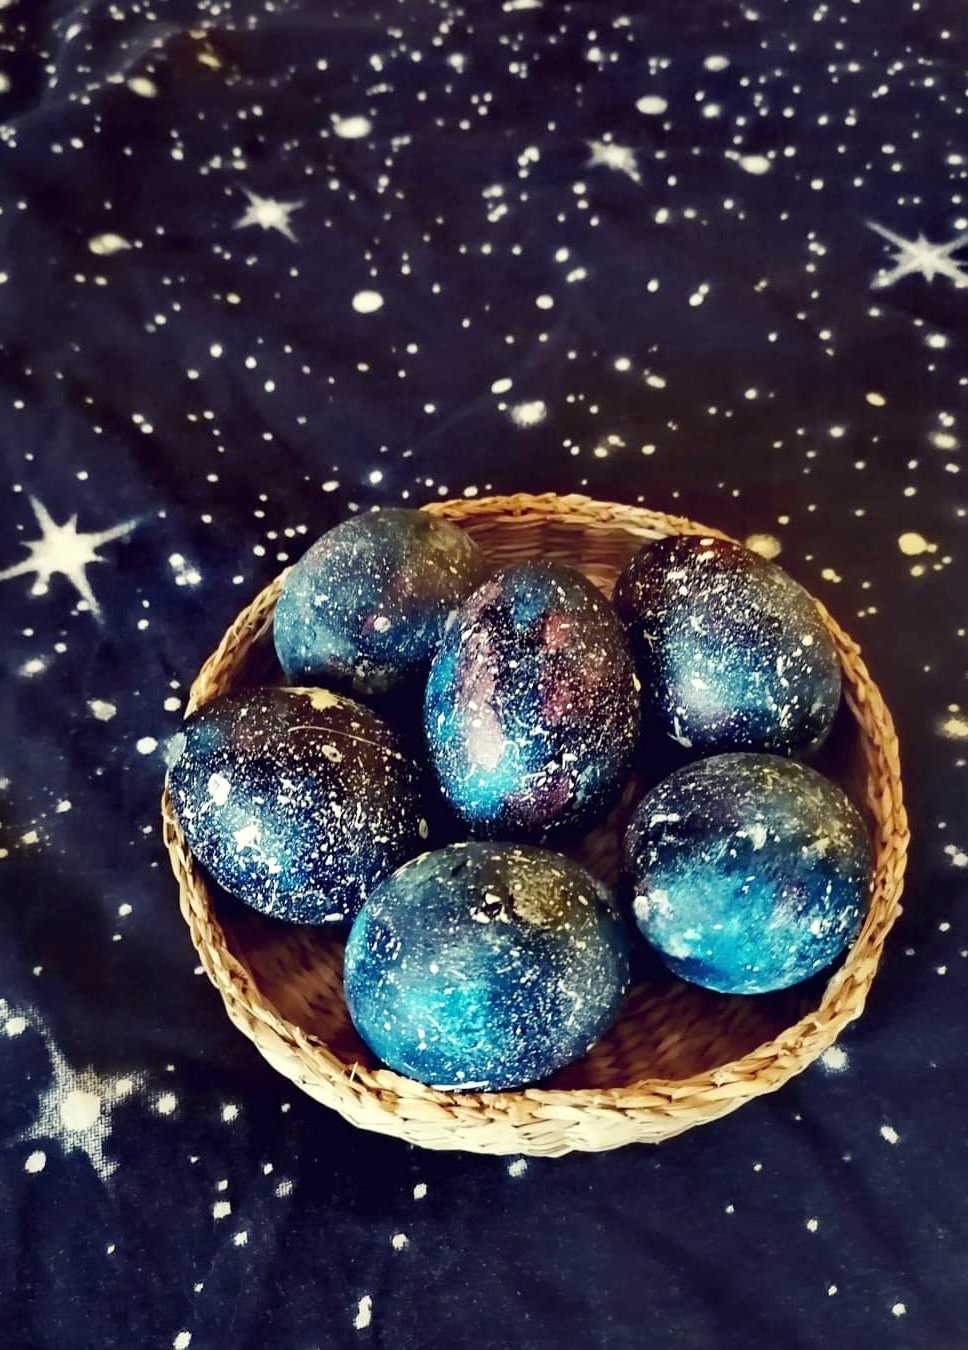 Eggliptical galaxy